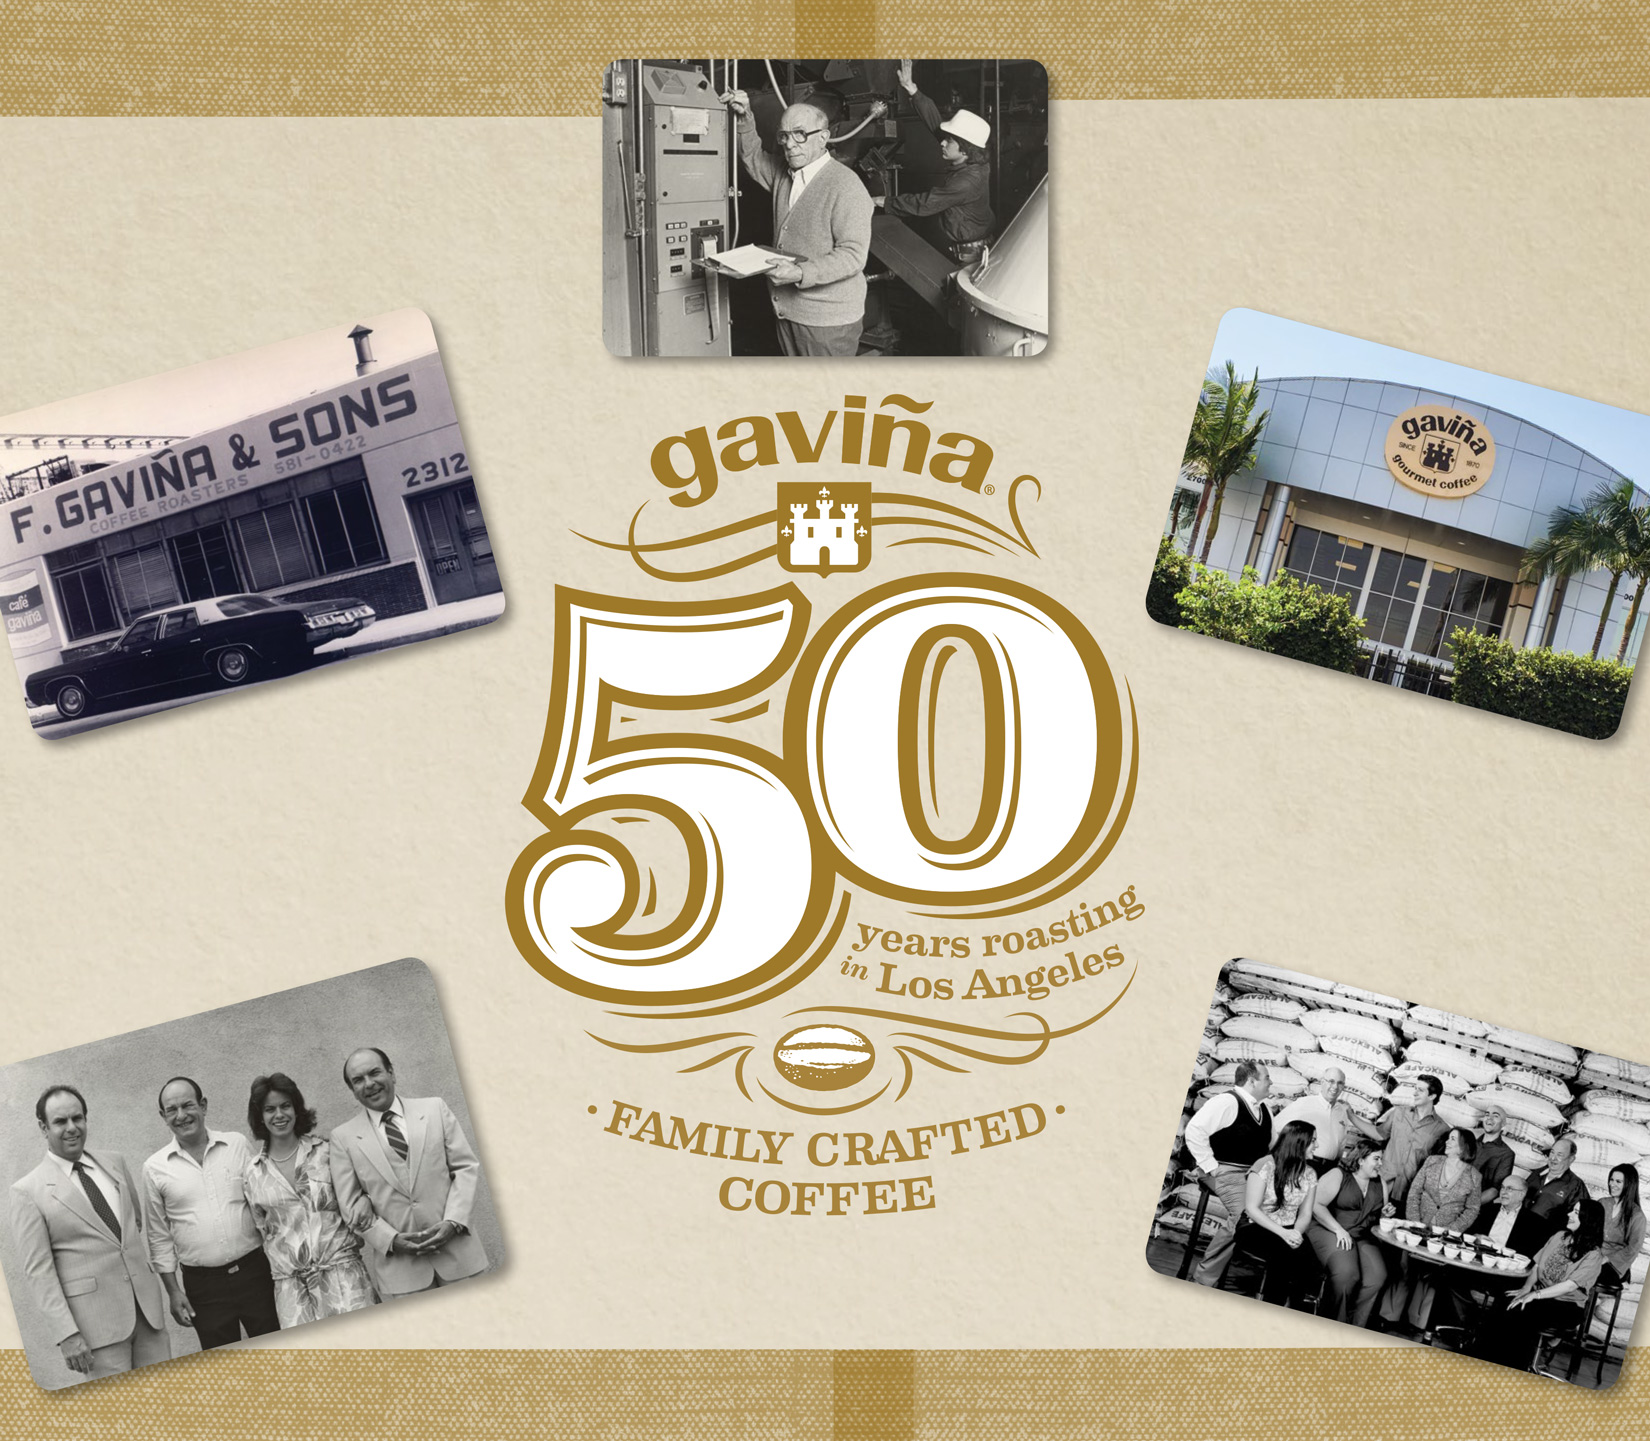 Gaviña Celebrates 50 Years in L.A.